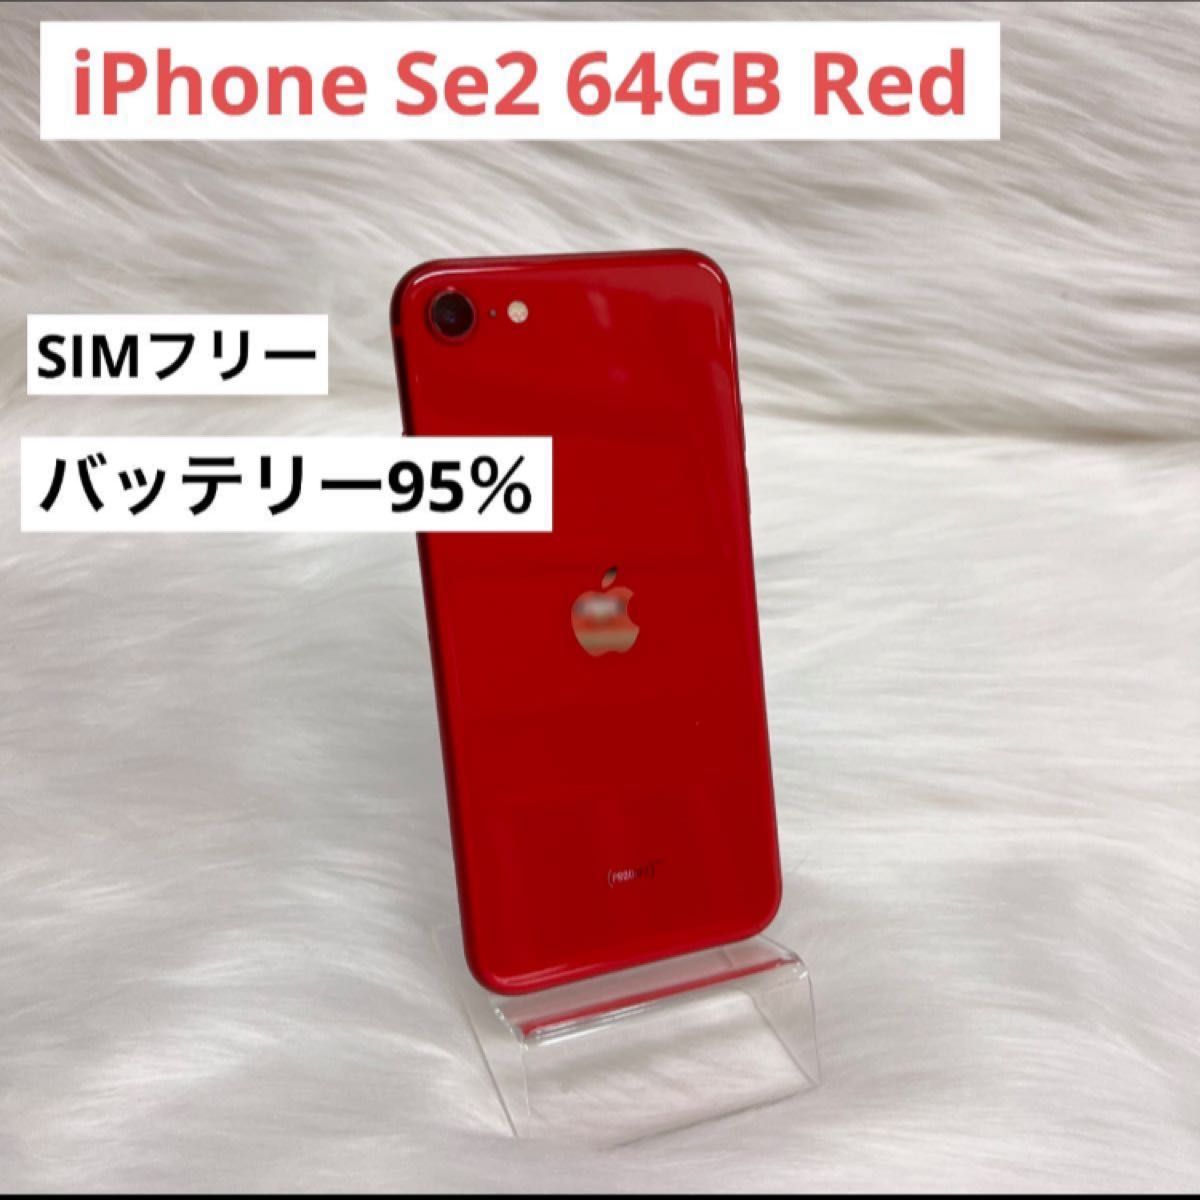 専門ショップ iPhone SE SIMフリー GB 64 レッド (SE2) 第2世代 携帯